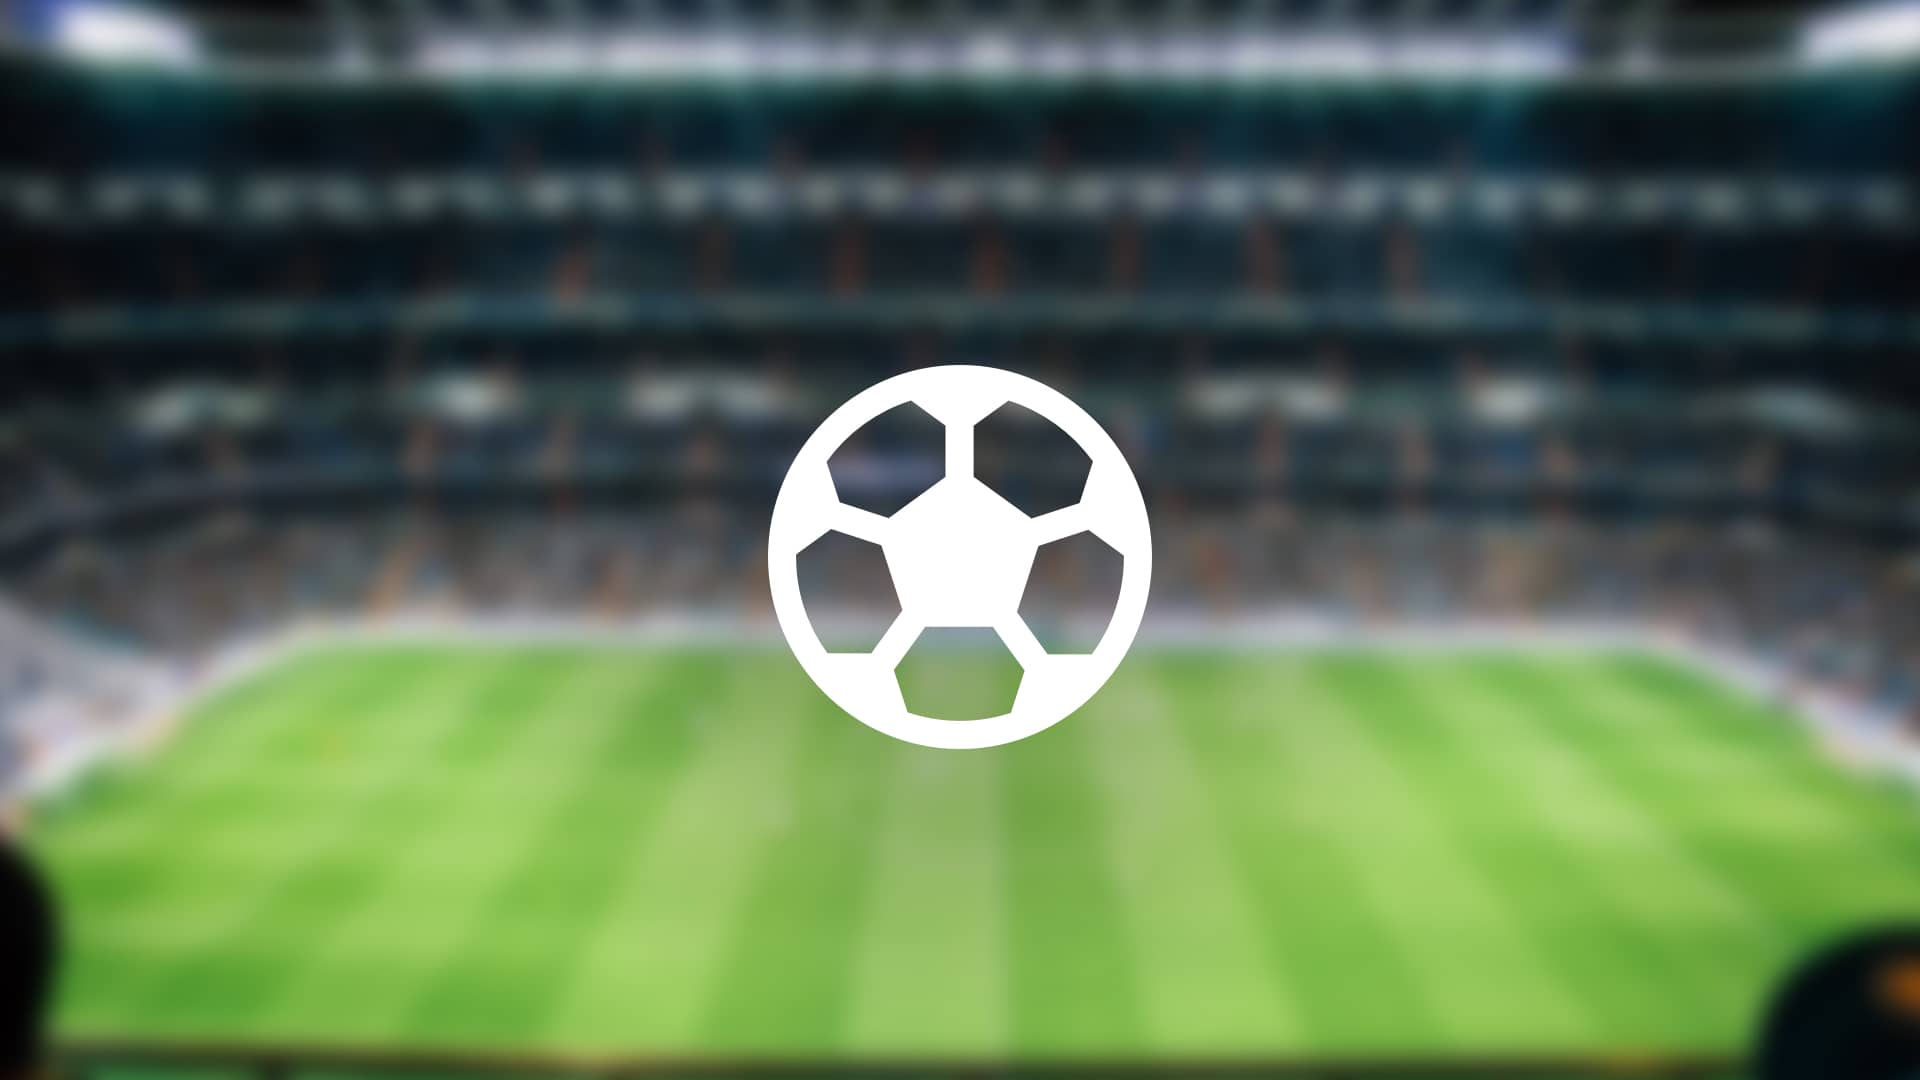 Dónde ver todo el fútbol en directo y online: opciones y precios | Diciembre 2022